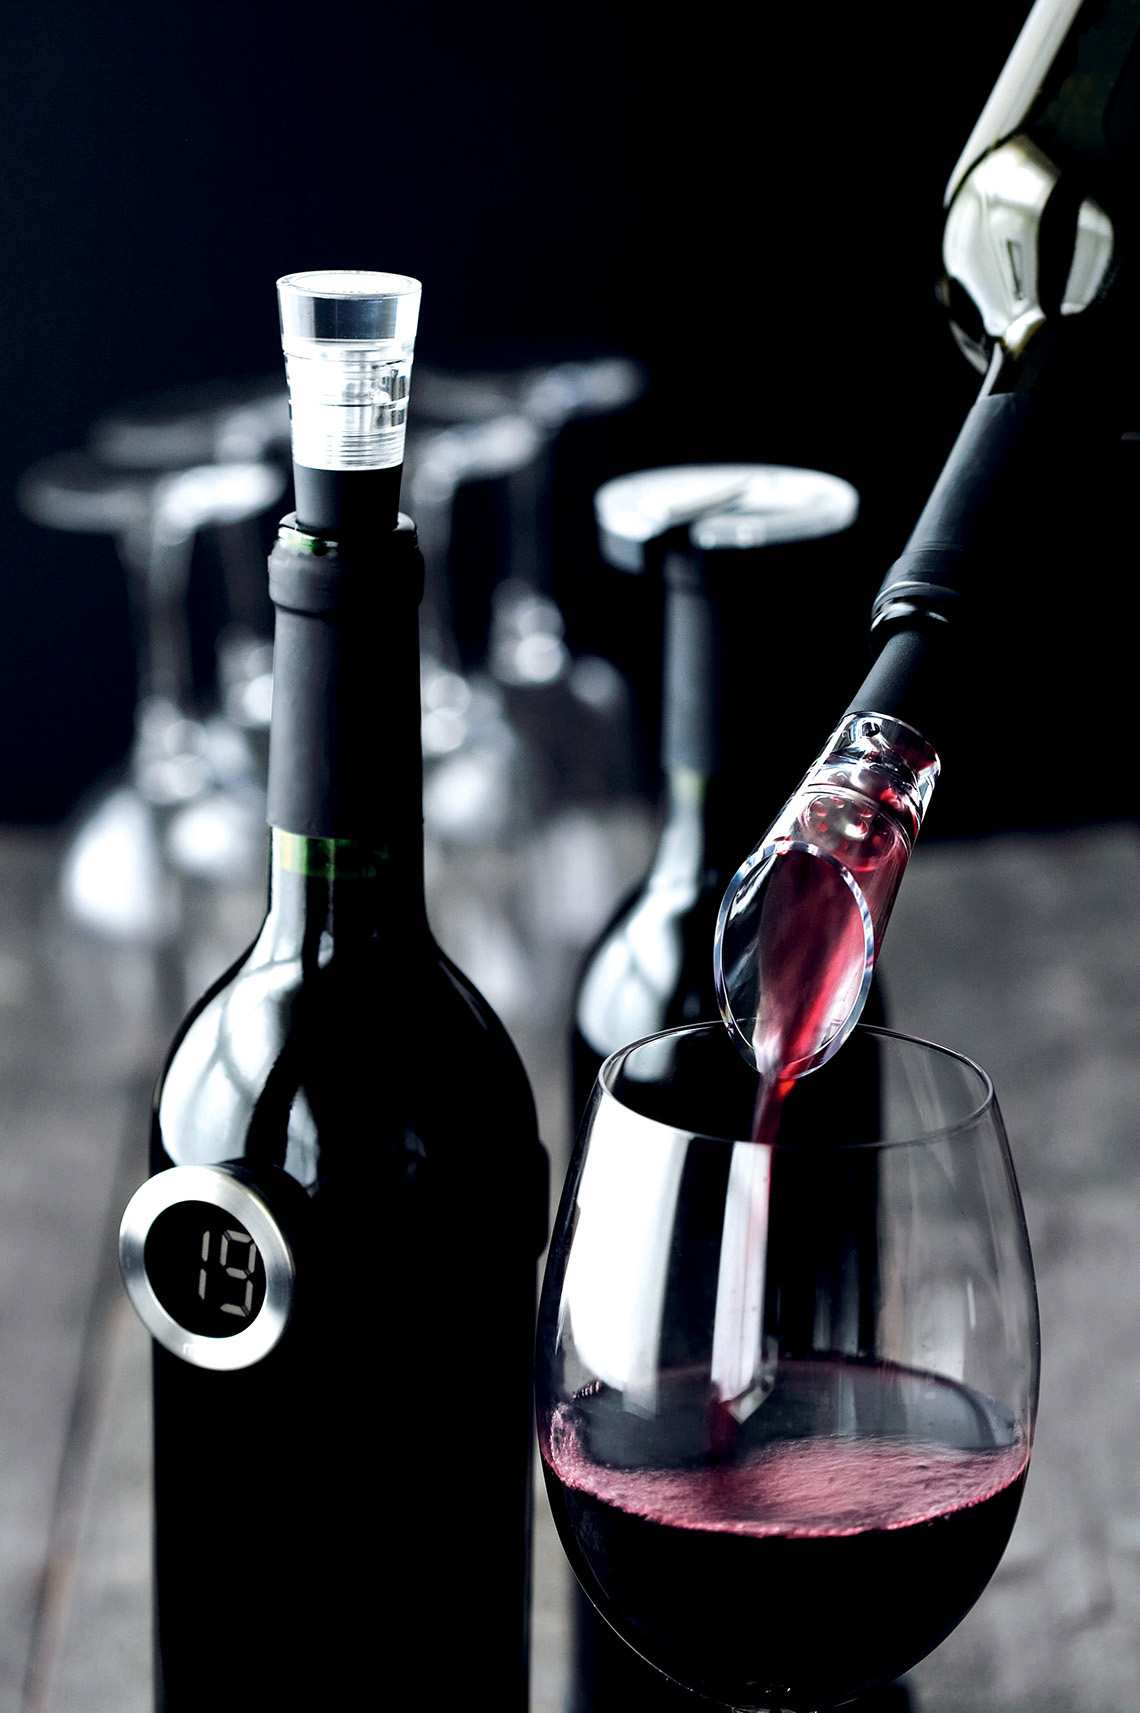 Marka Menu stworzyła unikatowy nalewak-dekanter do wina z próżniową komorą